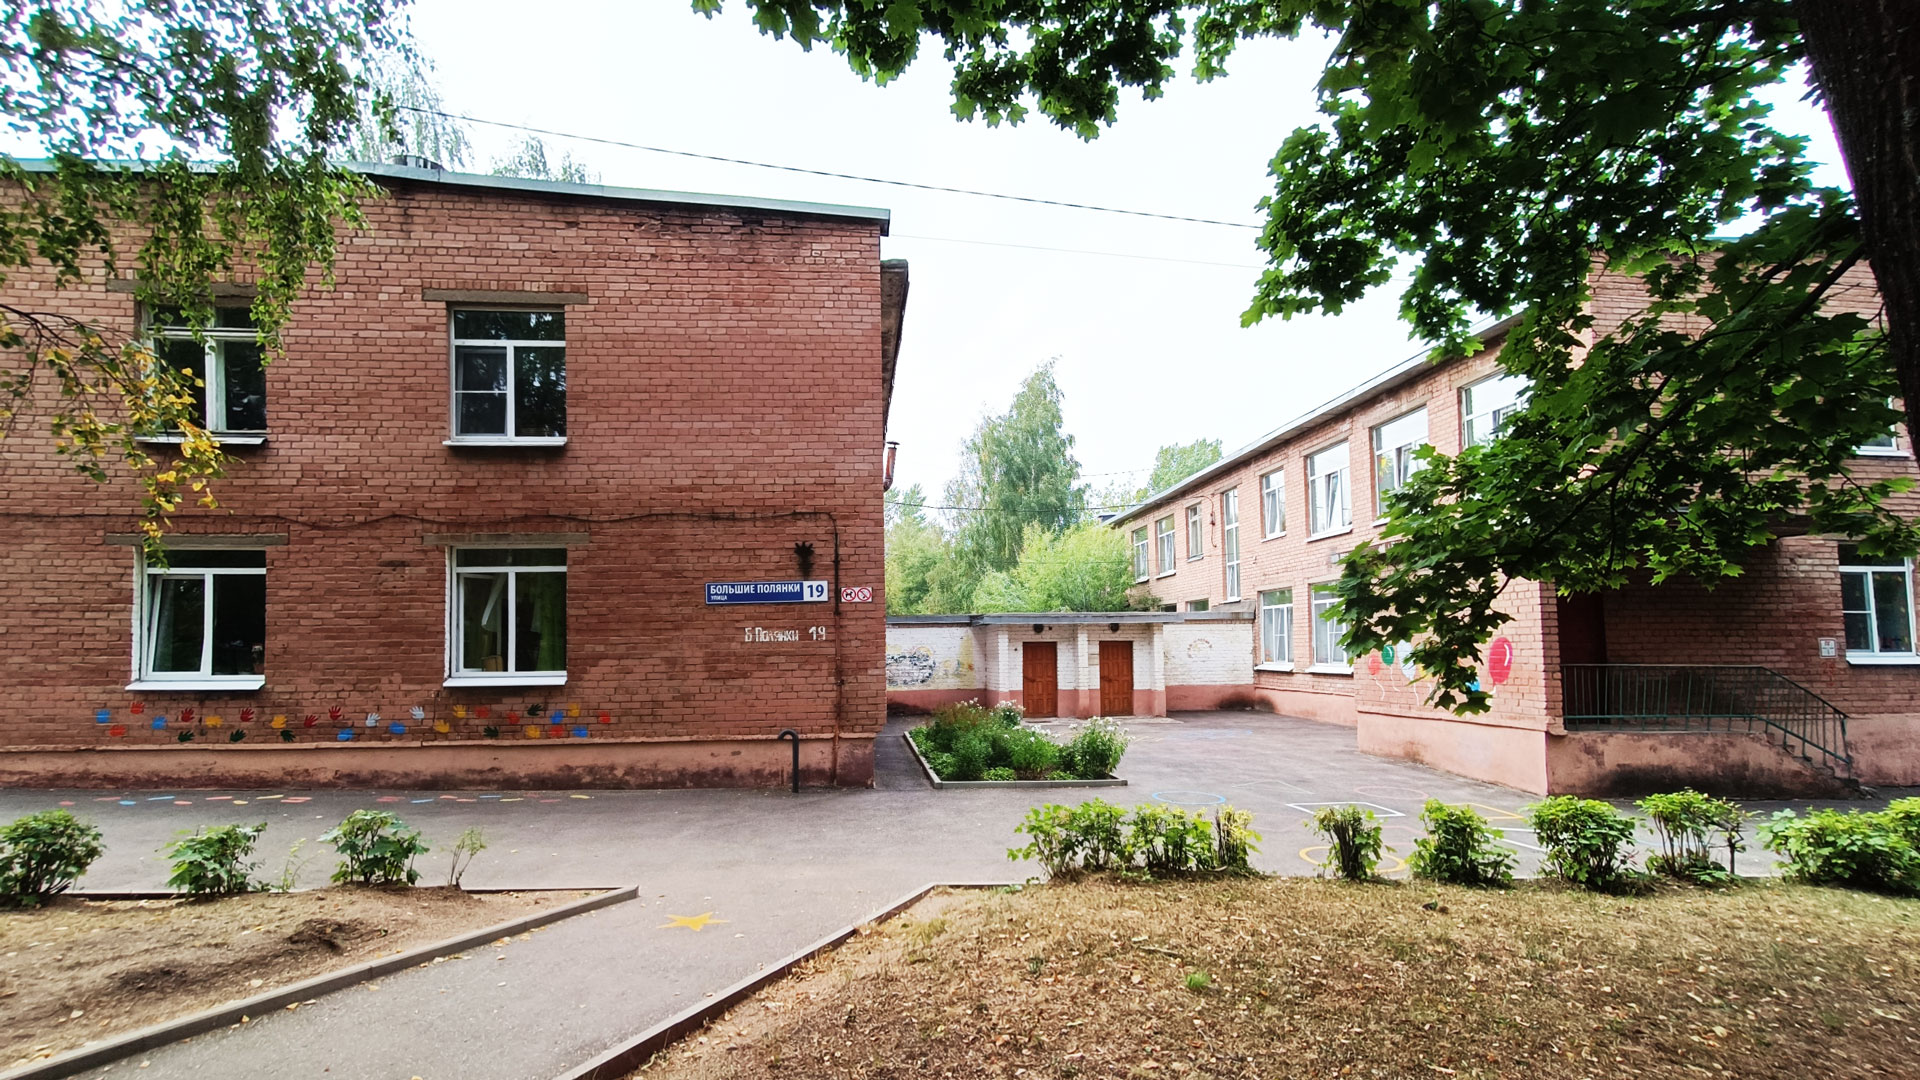 Детский сад 210 Ярославль: главный вход в здание садика.